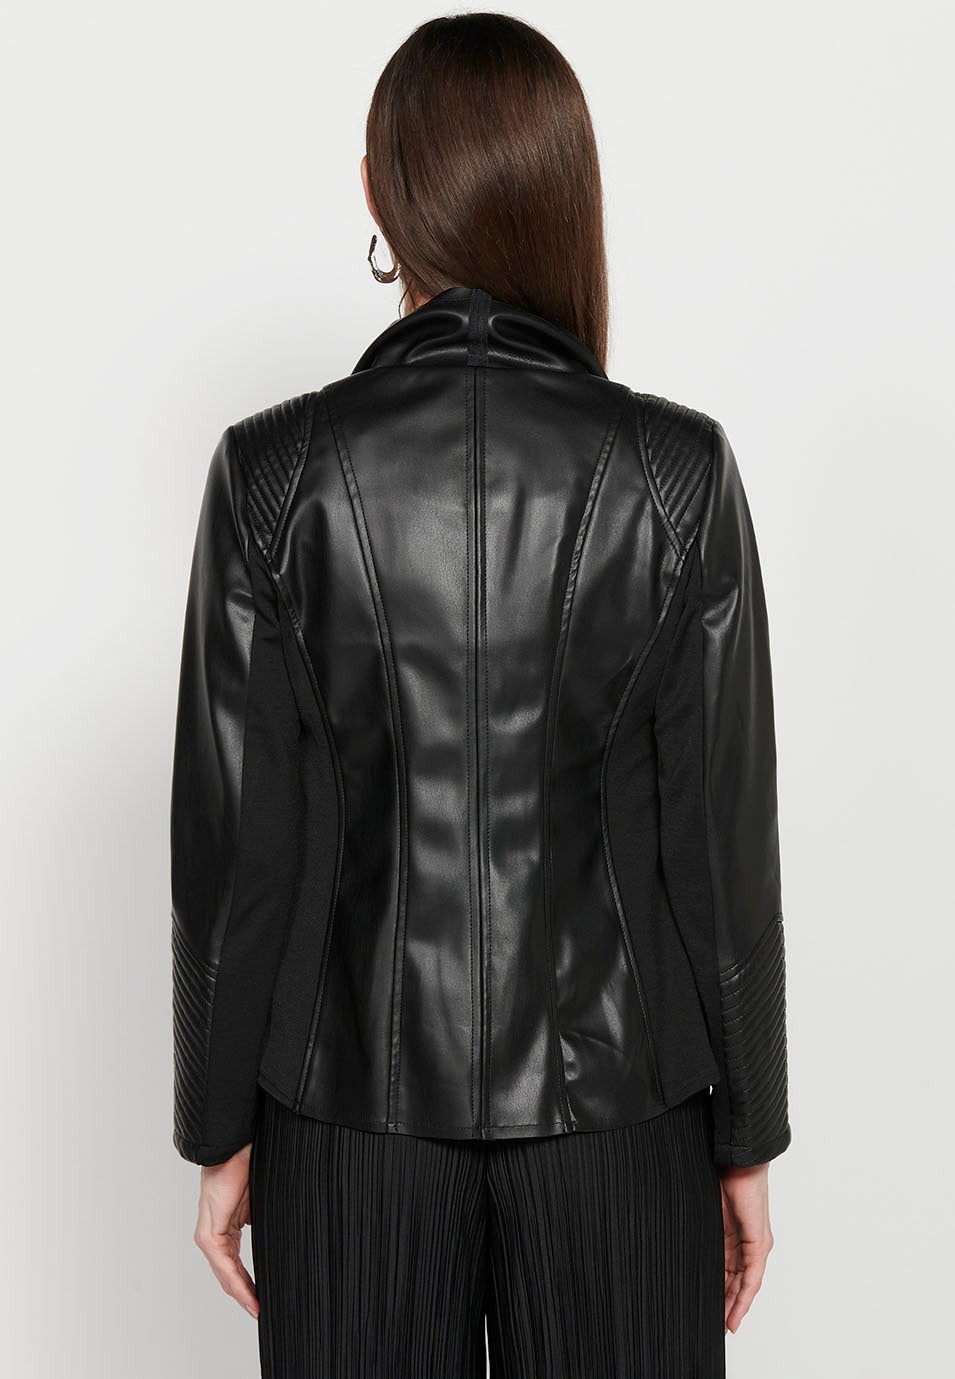 Jaqueta de màniga llarga, acabat asimètric, Color negre per a dona